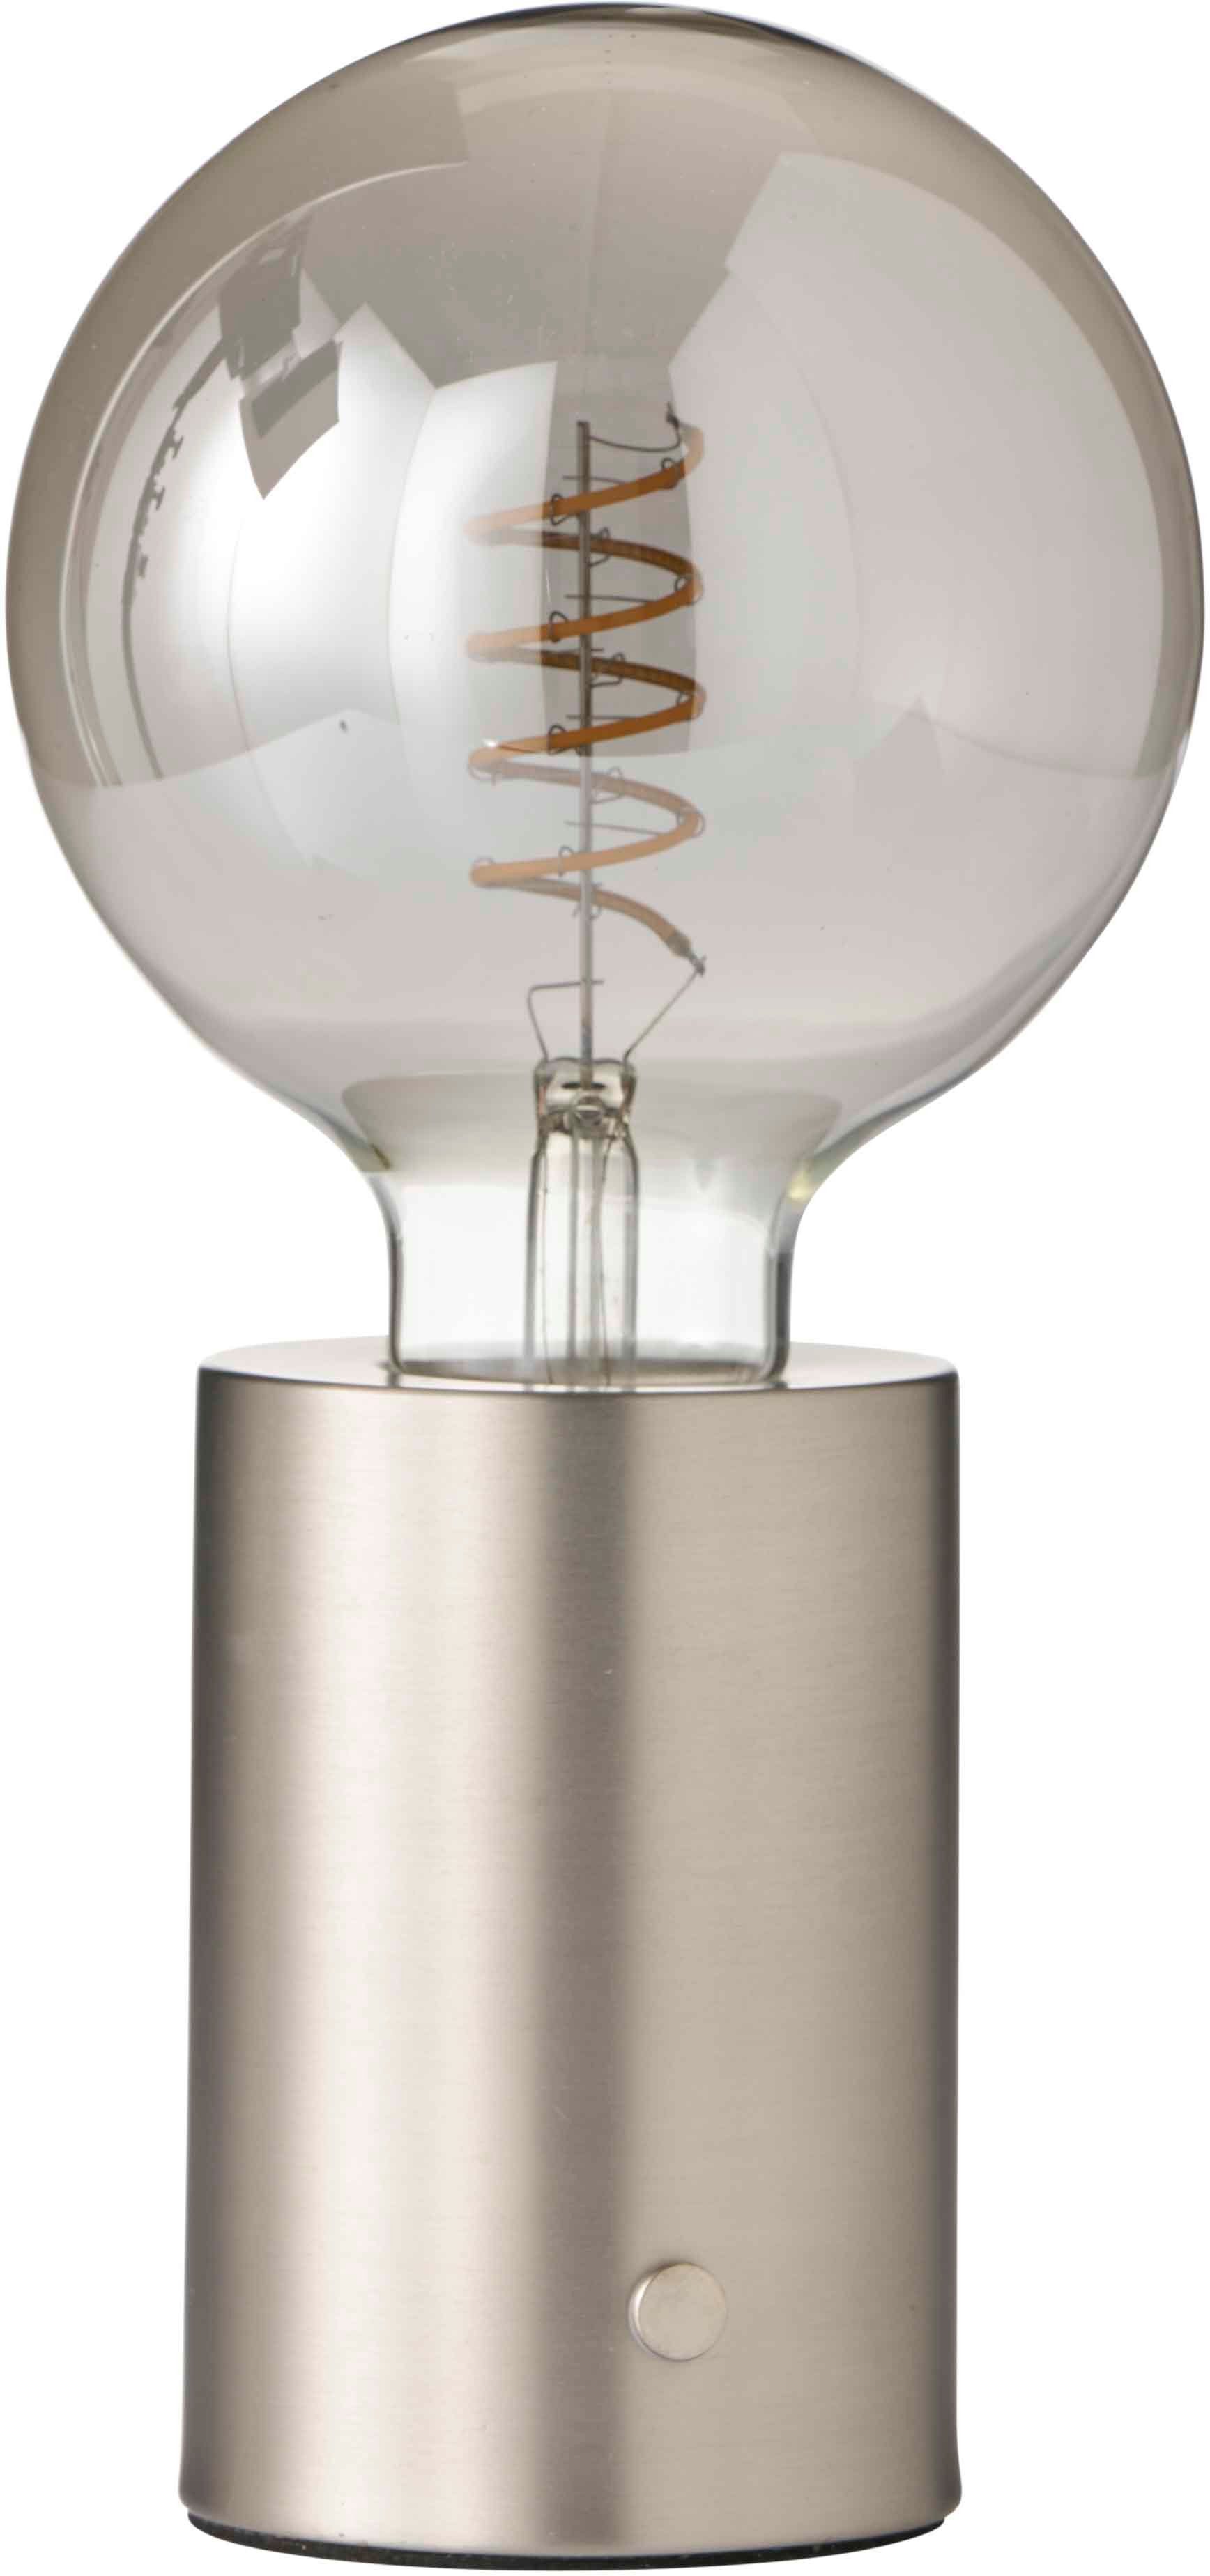 Northpoint Nachttischlampe LED Akku Tischlampe Tischleuchte Edison Glühbirne mit Glühdraht Stahl dunkle Birne